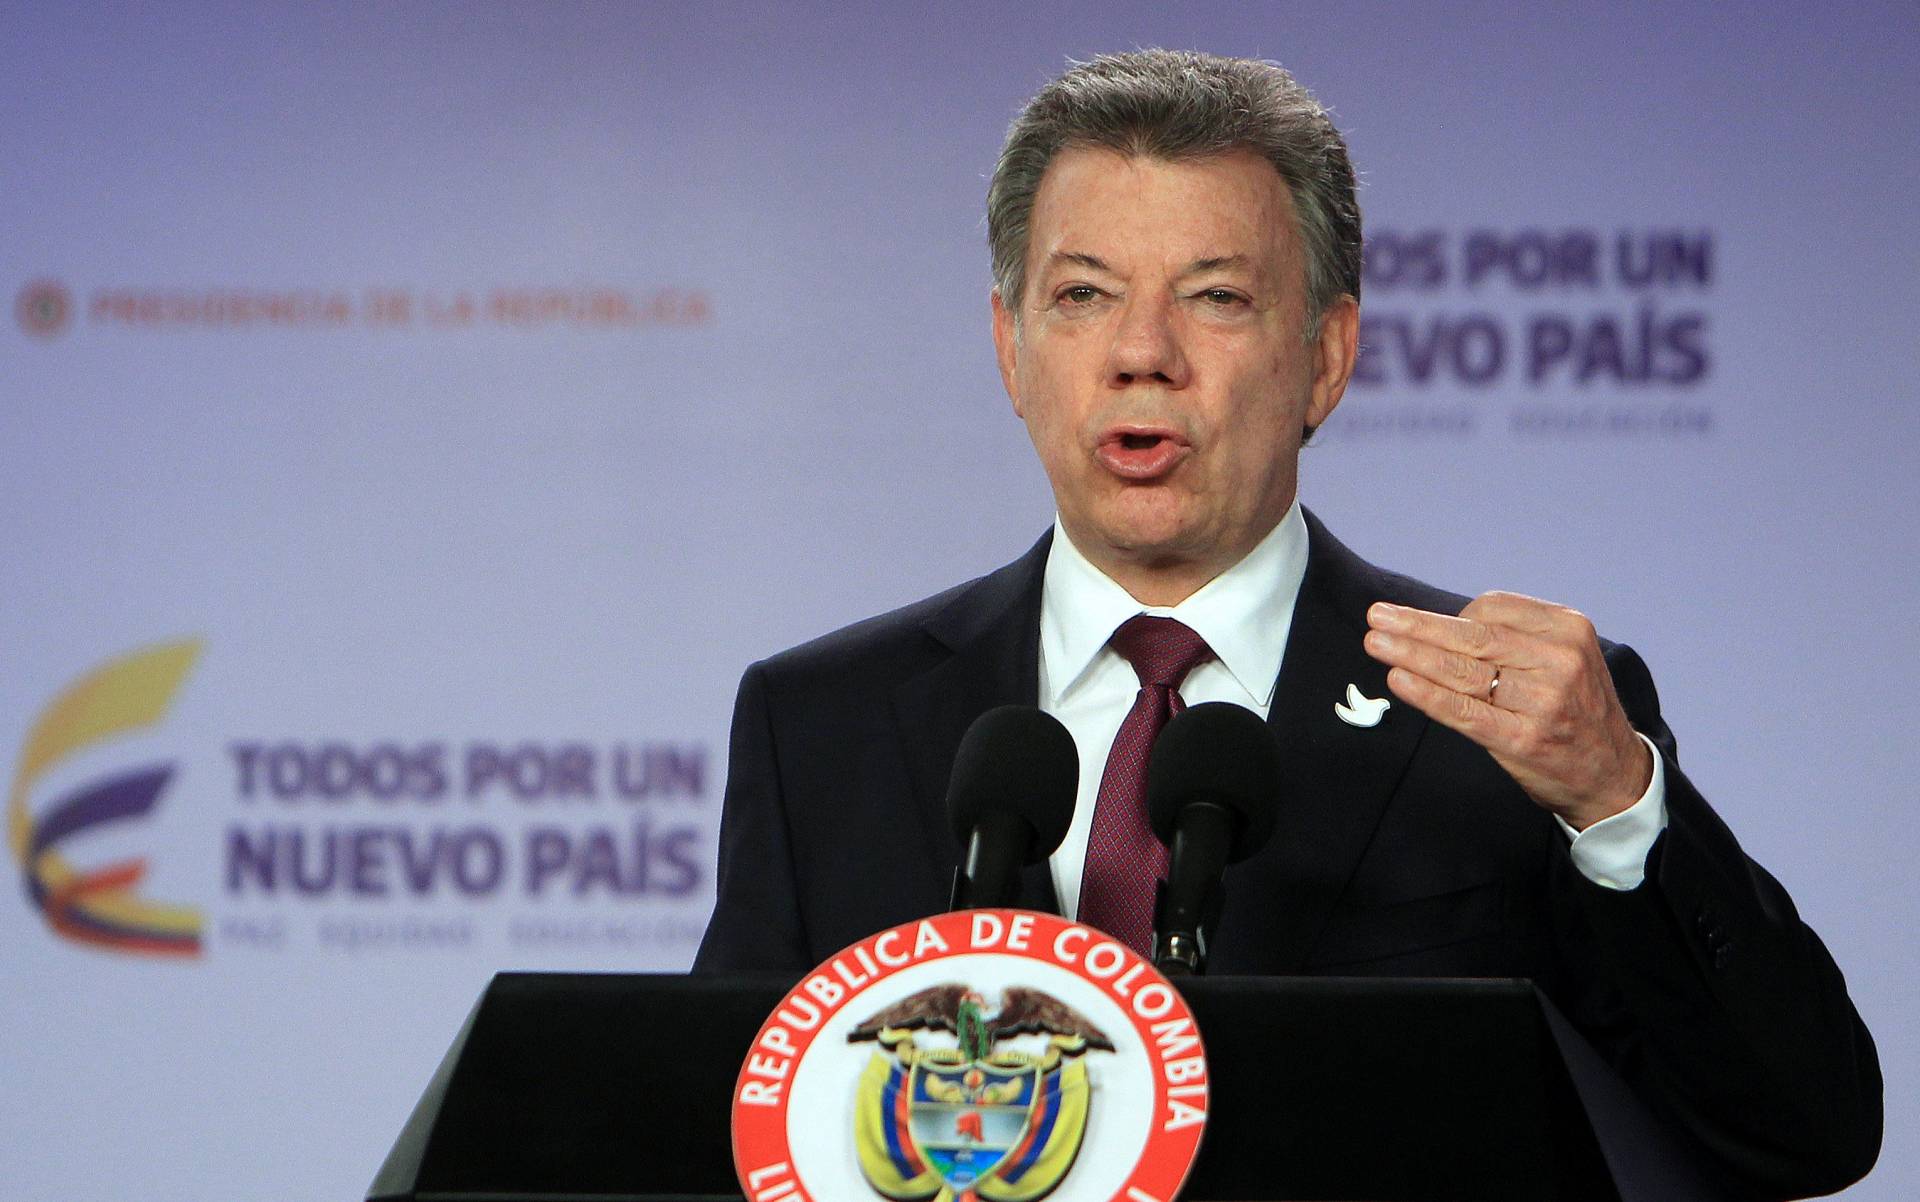 Gobierno y FARC anuncian un nuevo acuerdo de paz en Colombia